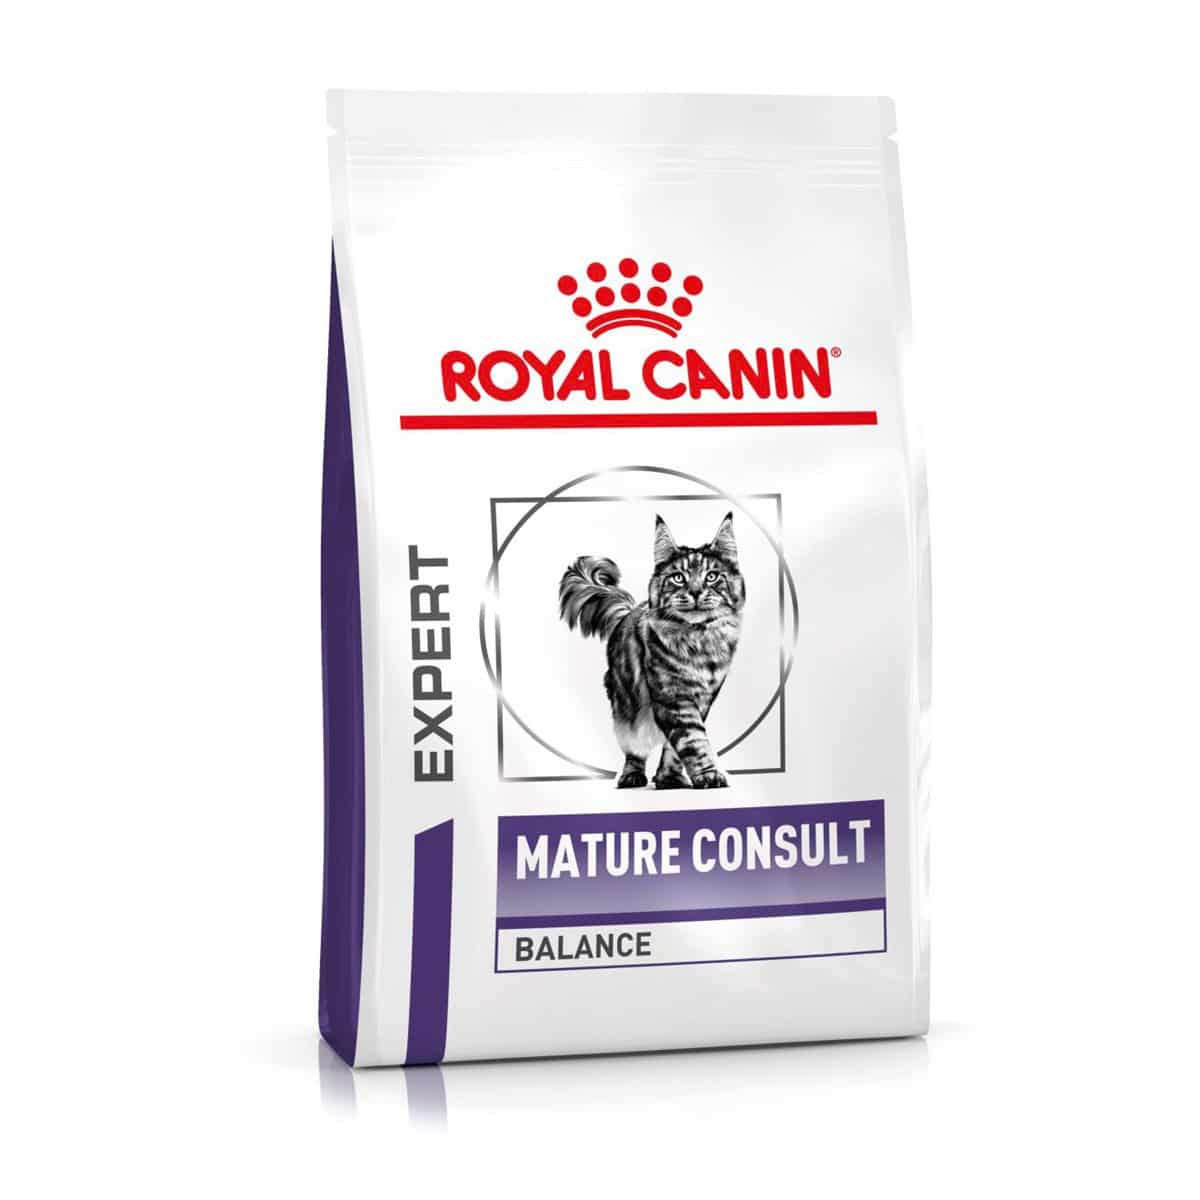 ROYAL CANIN® Expert MATURE CONSULT BALANCE Trockenfutter für Katzen 10kg